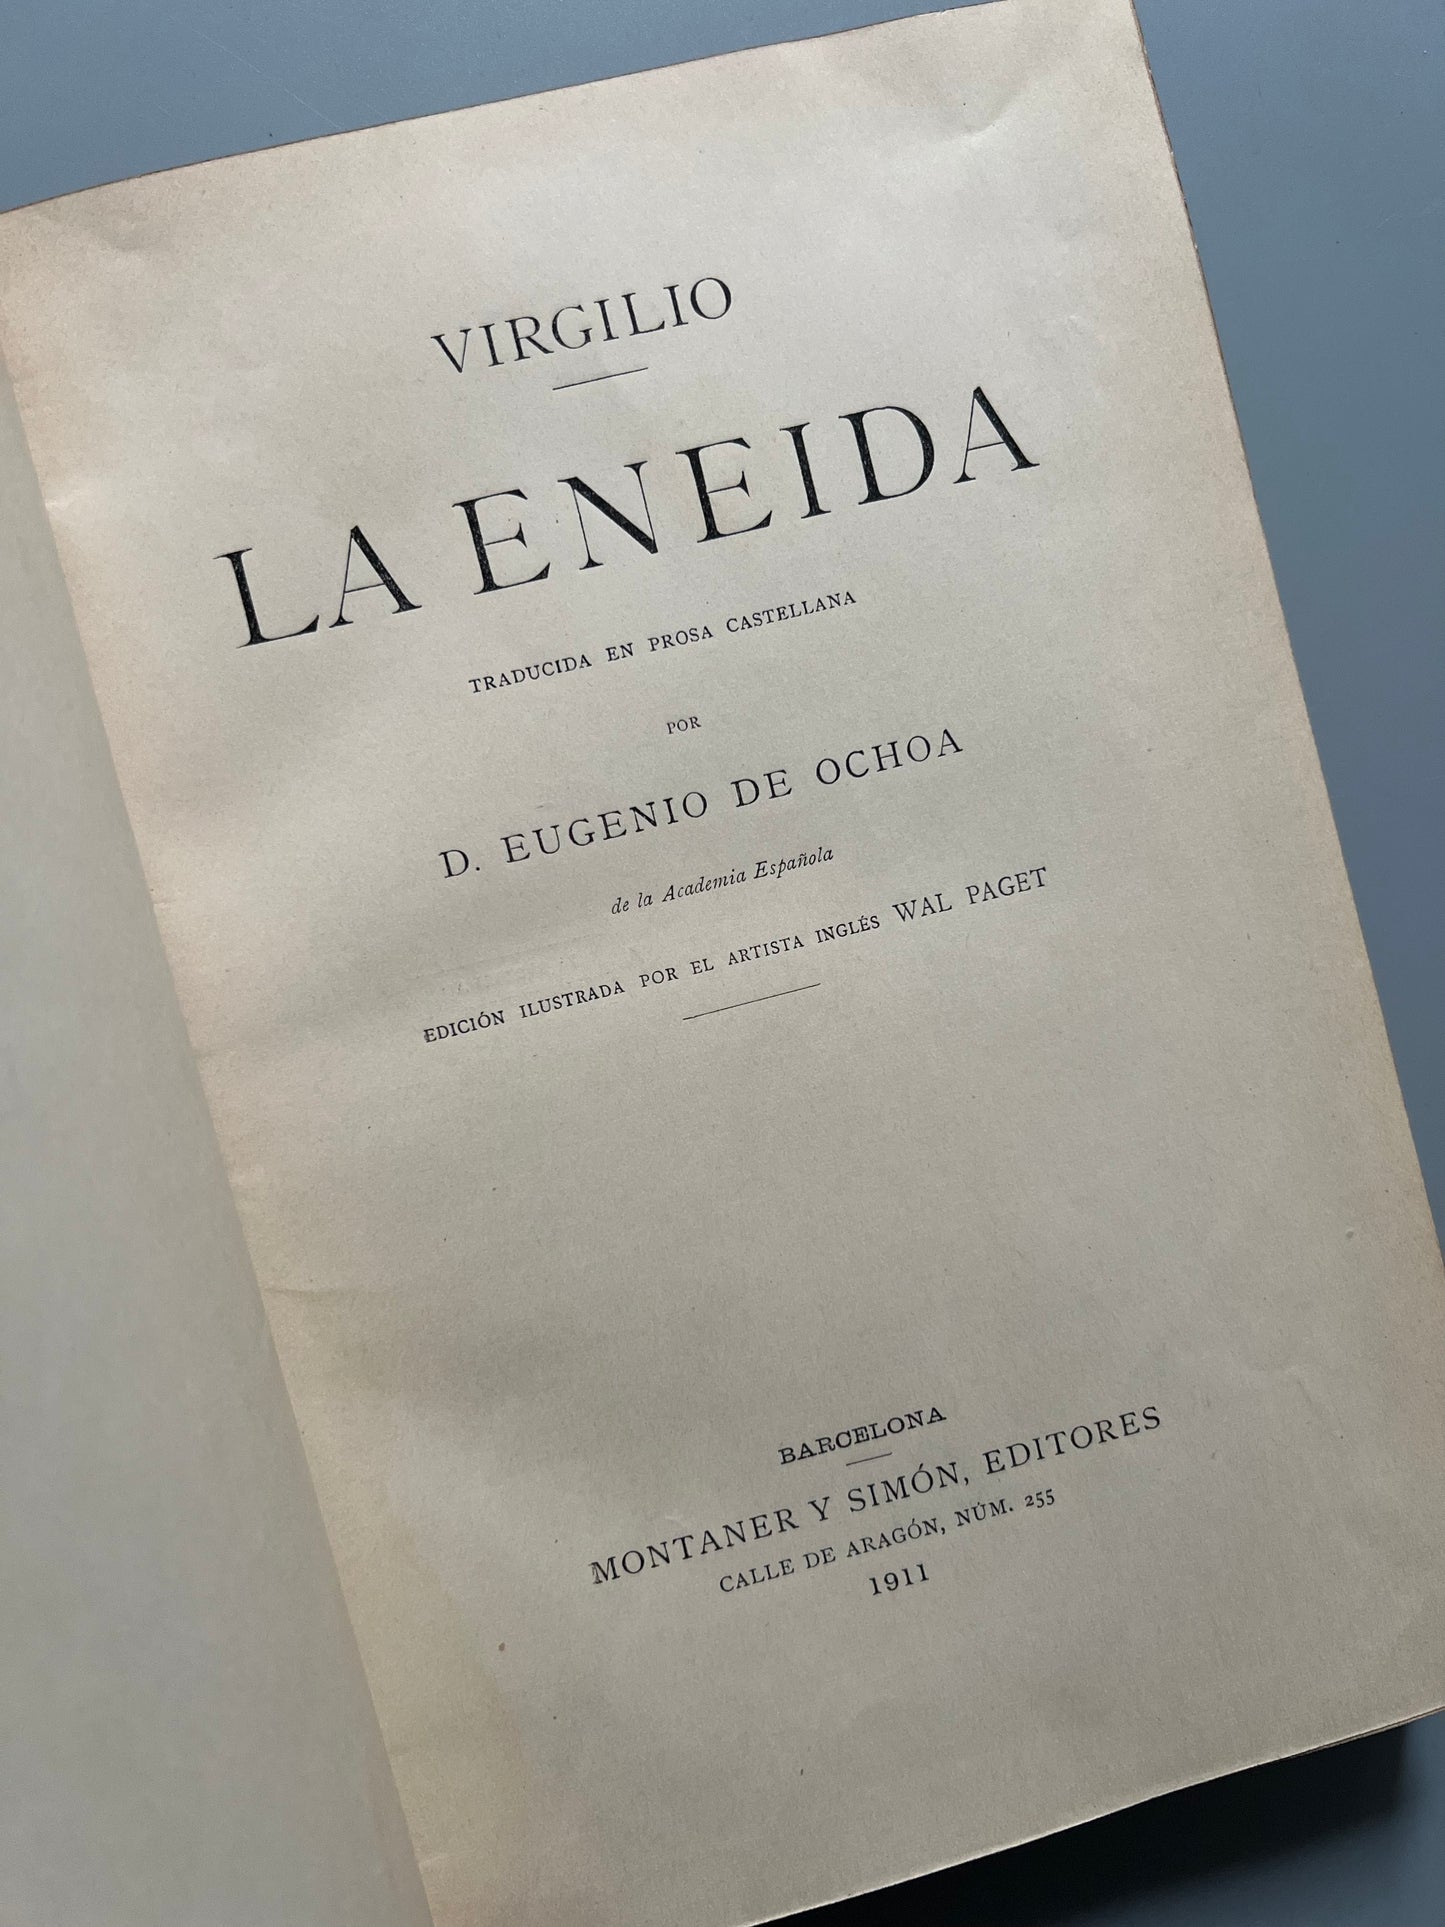 La Eneida, Virgilio - Montaner y Simón, 1911